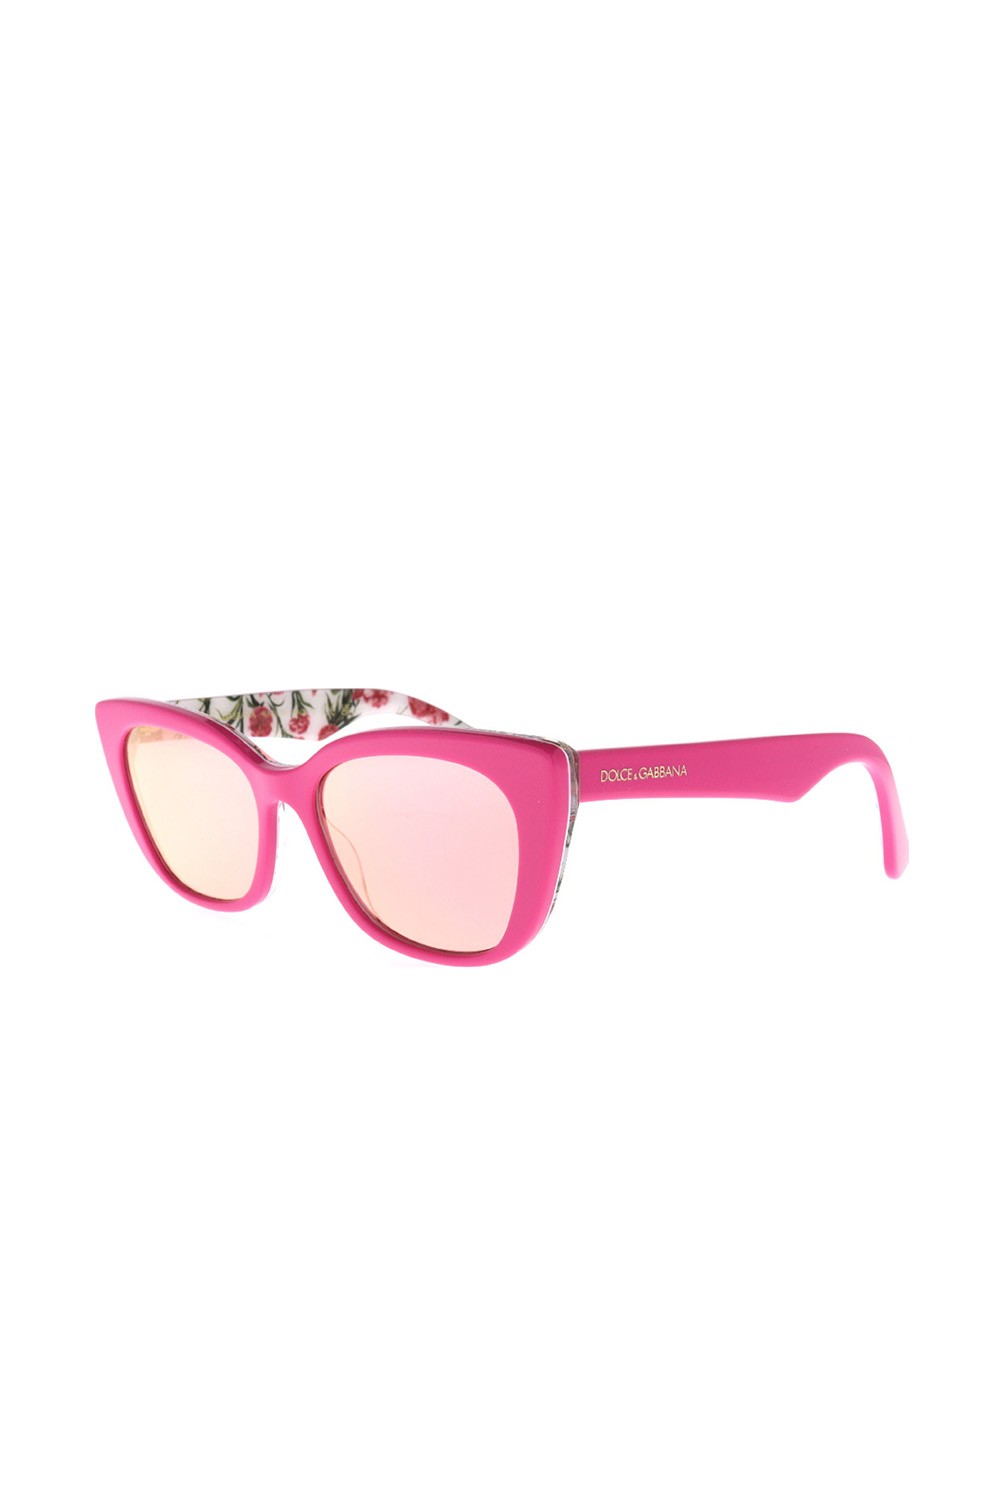 Dolce&Gabbana - Occhiali da sole in celluloide cat eye per bambina rosa